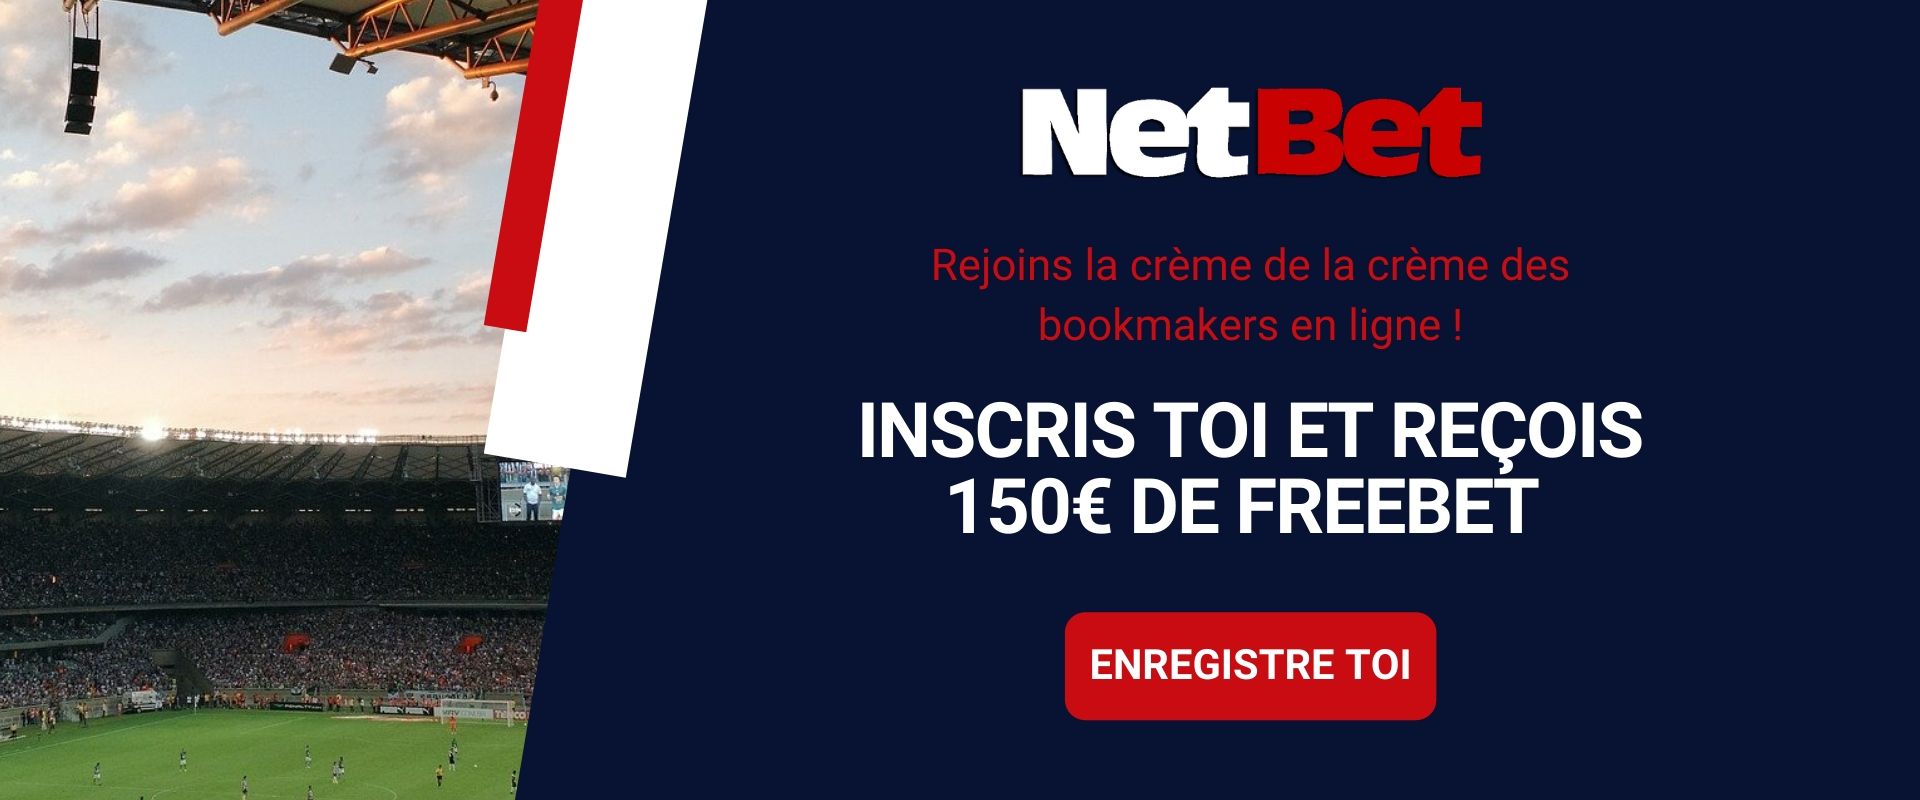 net offre de bienvenue avec 150 euros de freebet